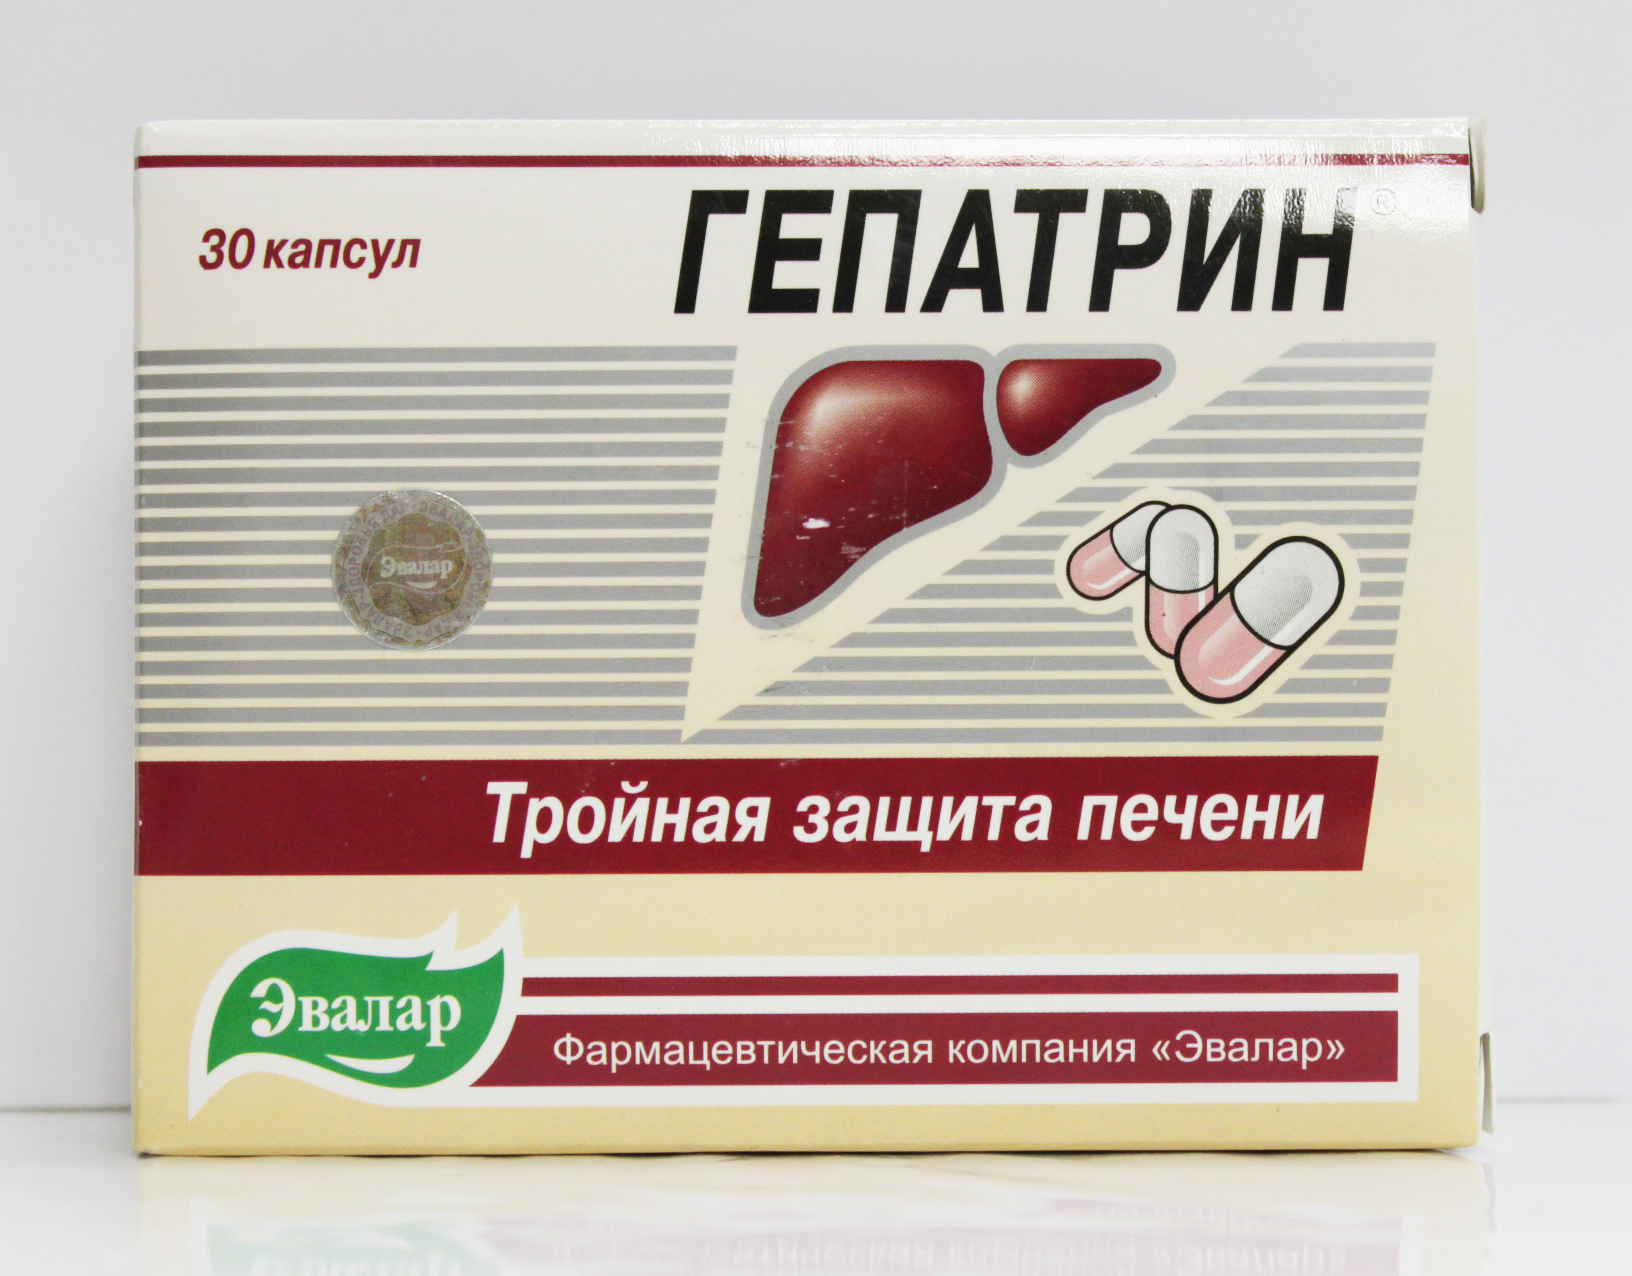 Недорогие препараты для печени цена. Гепатрин Эвалар 30 капсул. Гепатрин 4602242002185. Гепатрин 400 мг. Таблетки от печени Гепатрин.